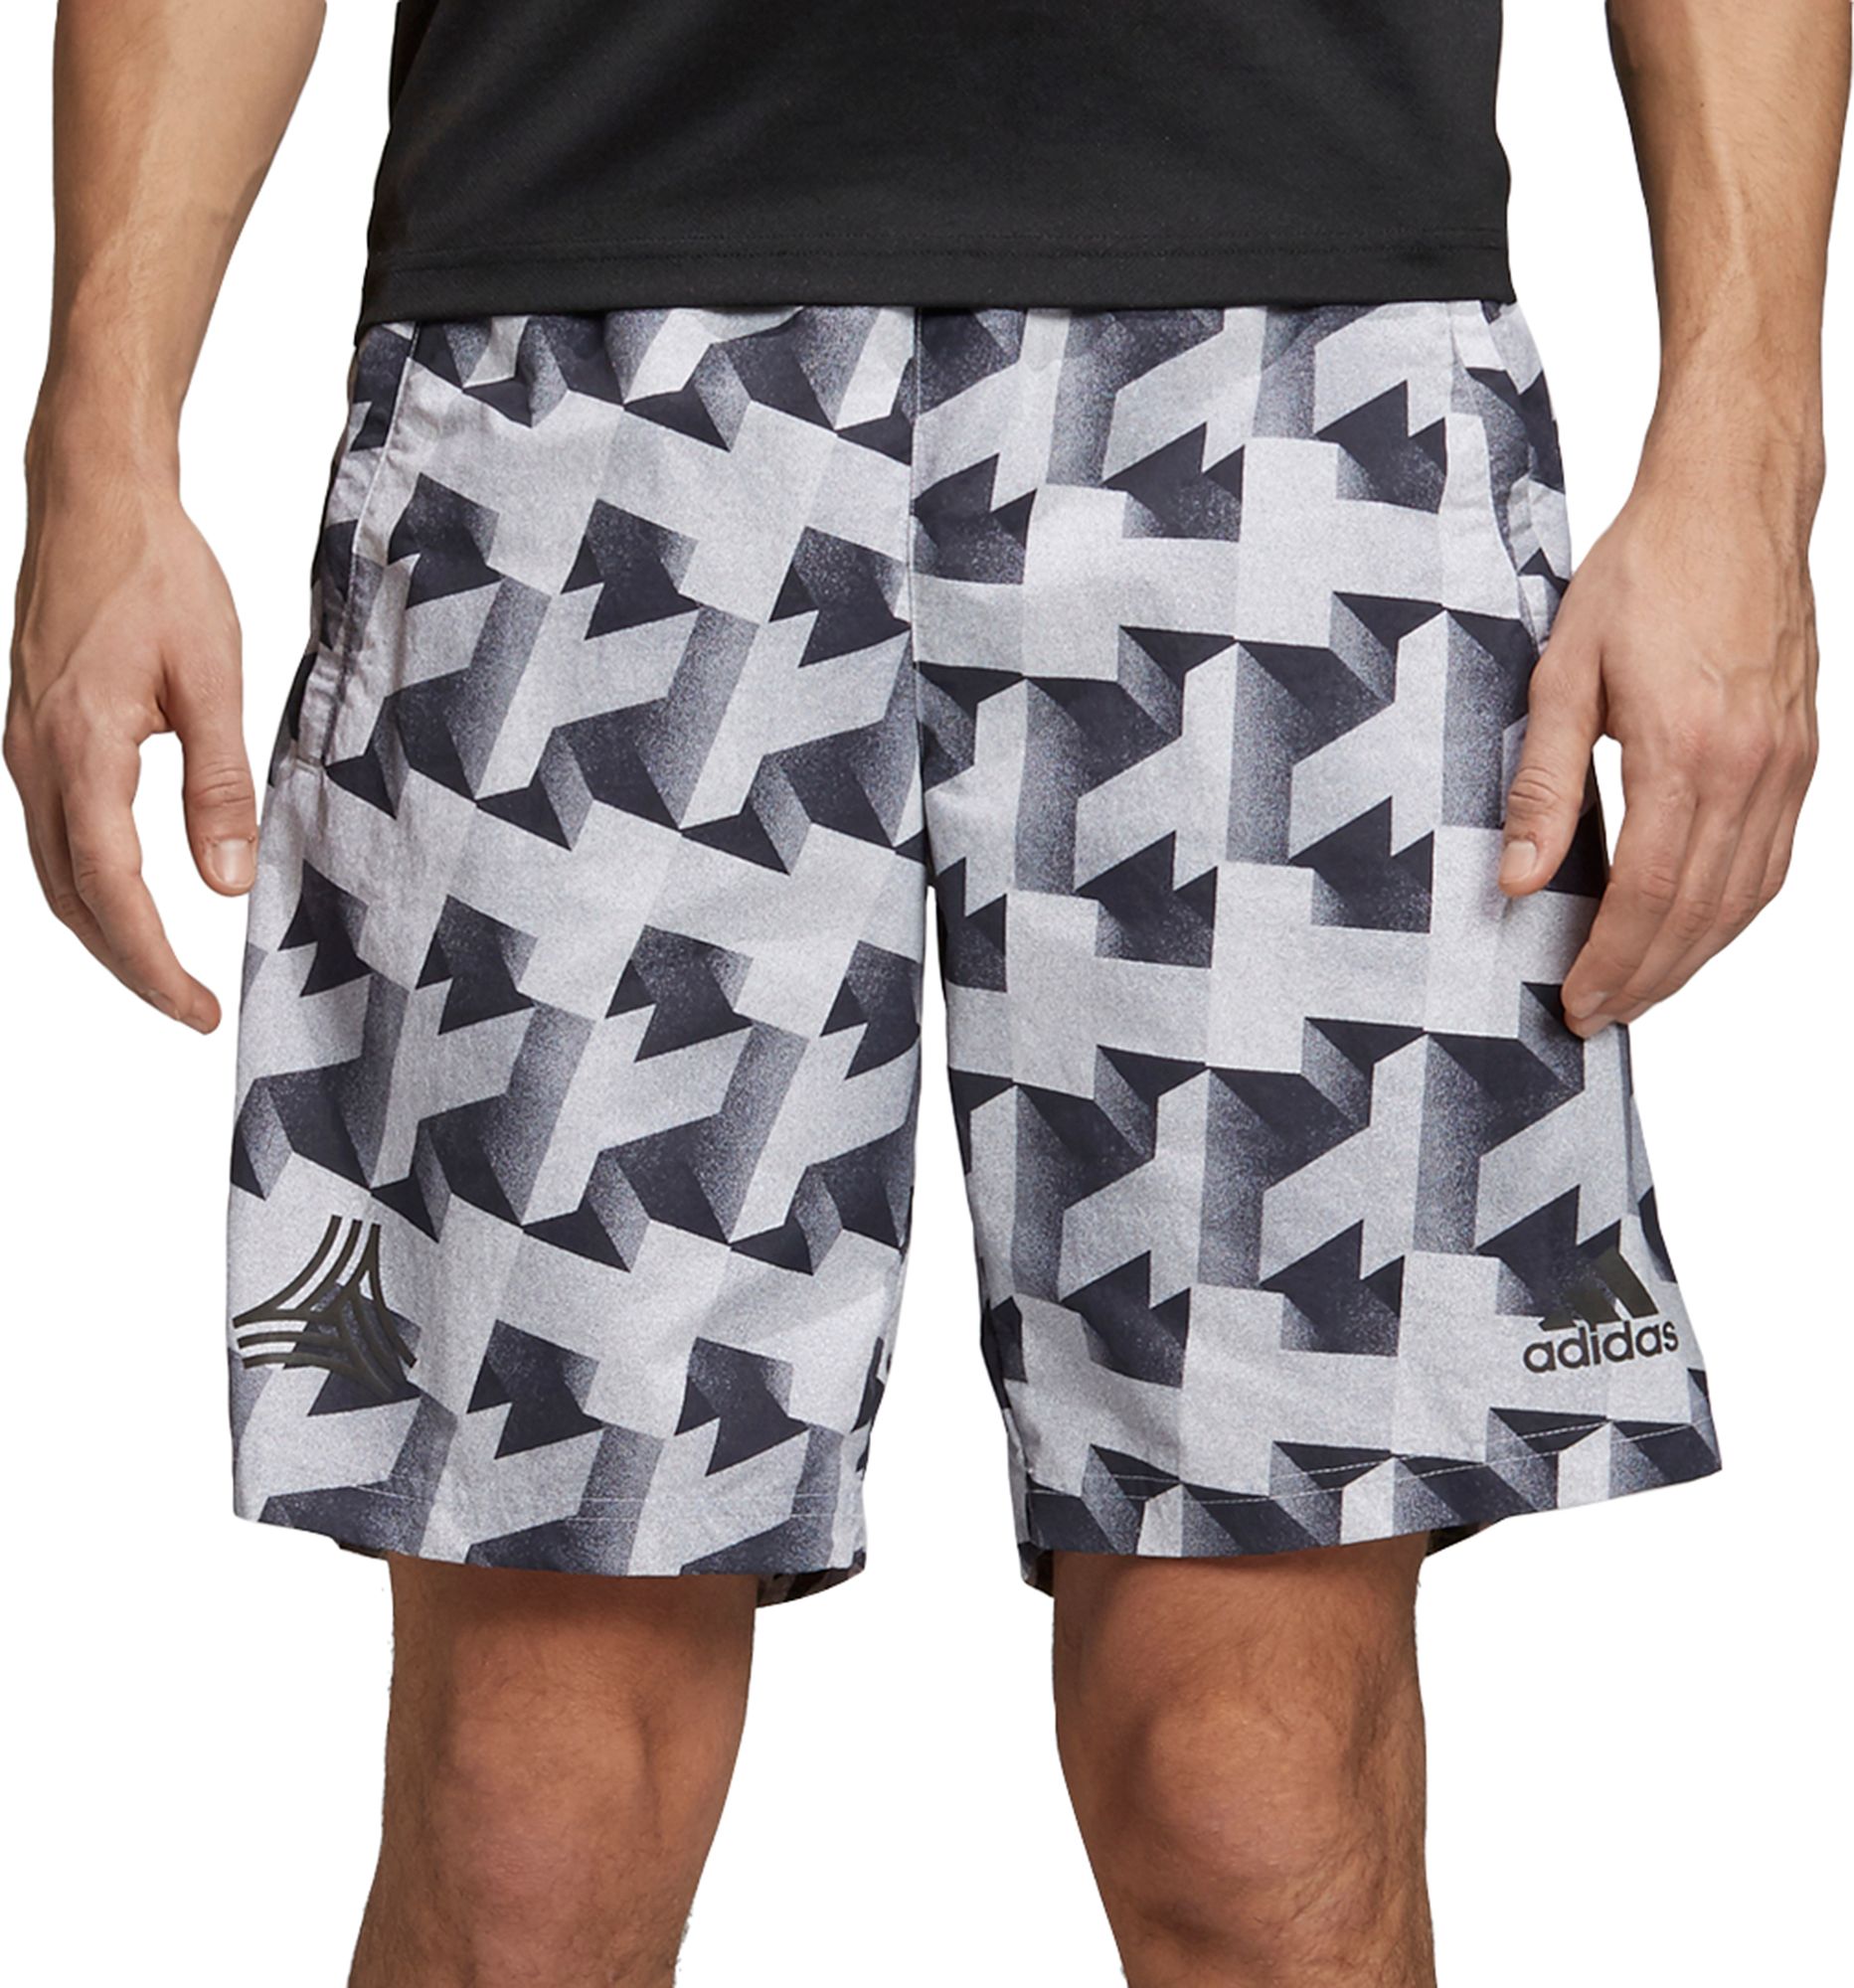 adidas print shorts